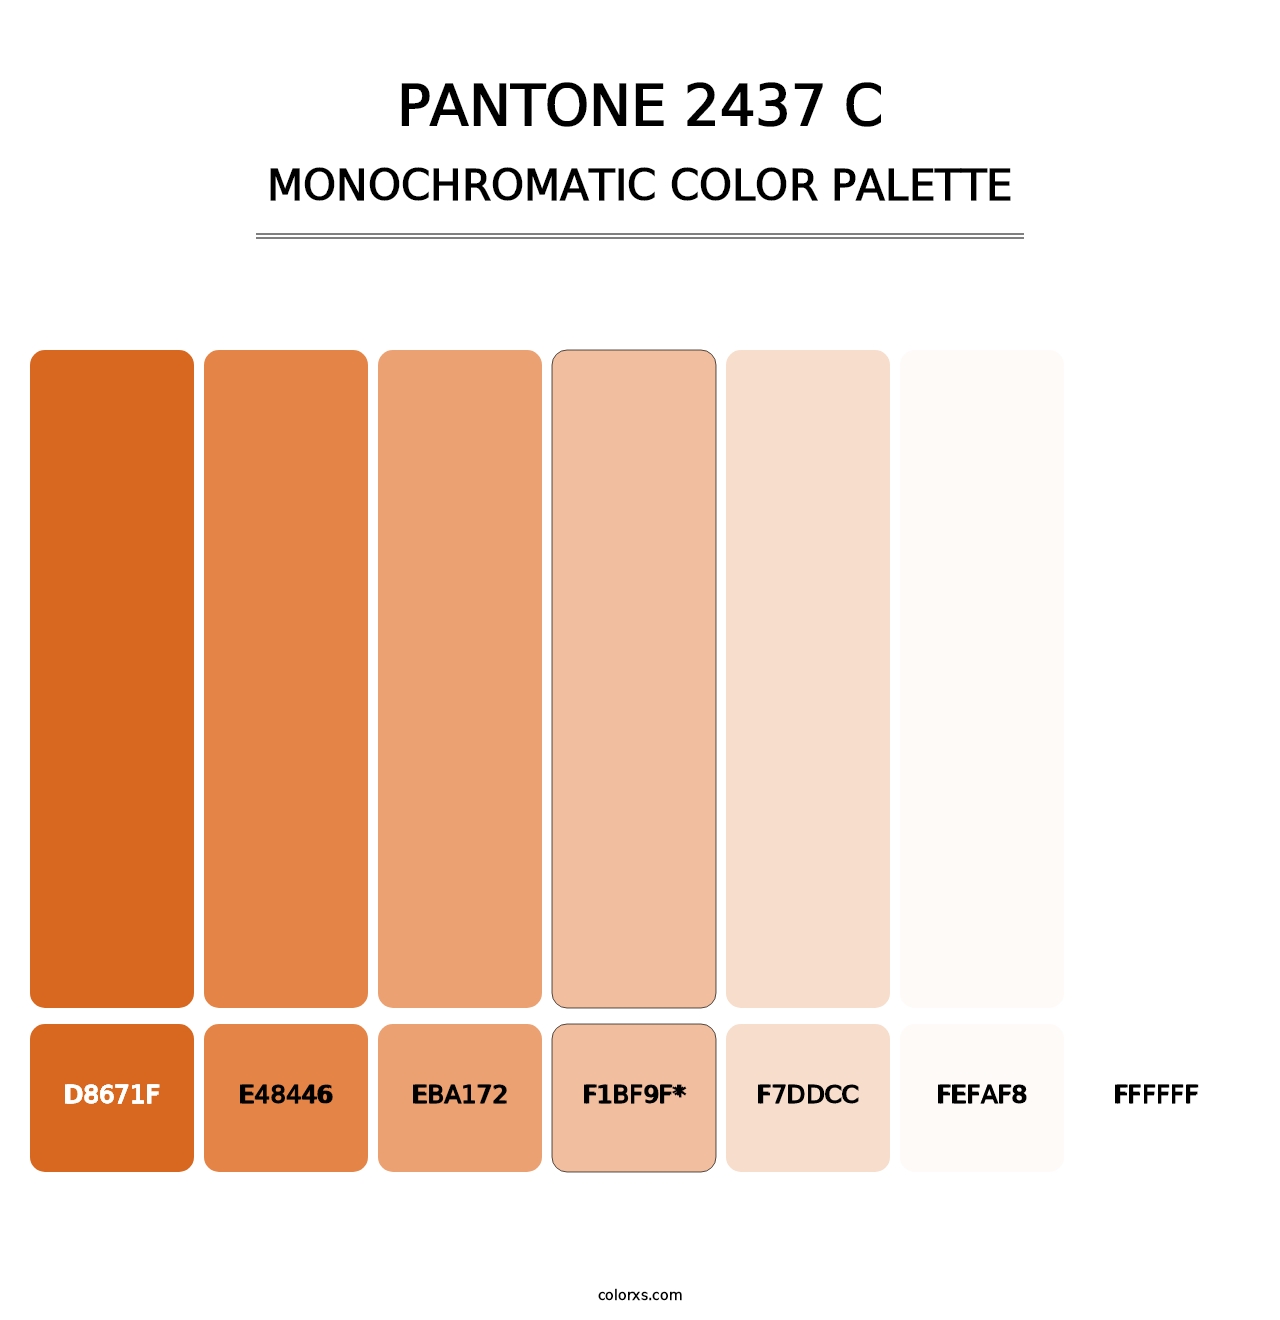 PANTONE 2437 C - Monochromatic Color Palette